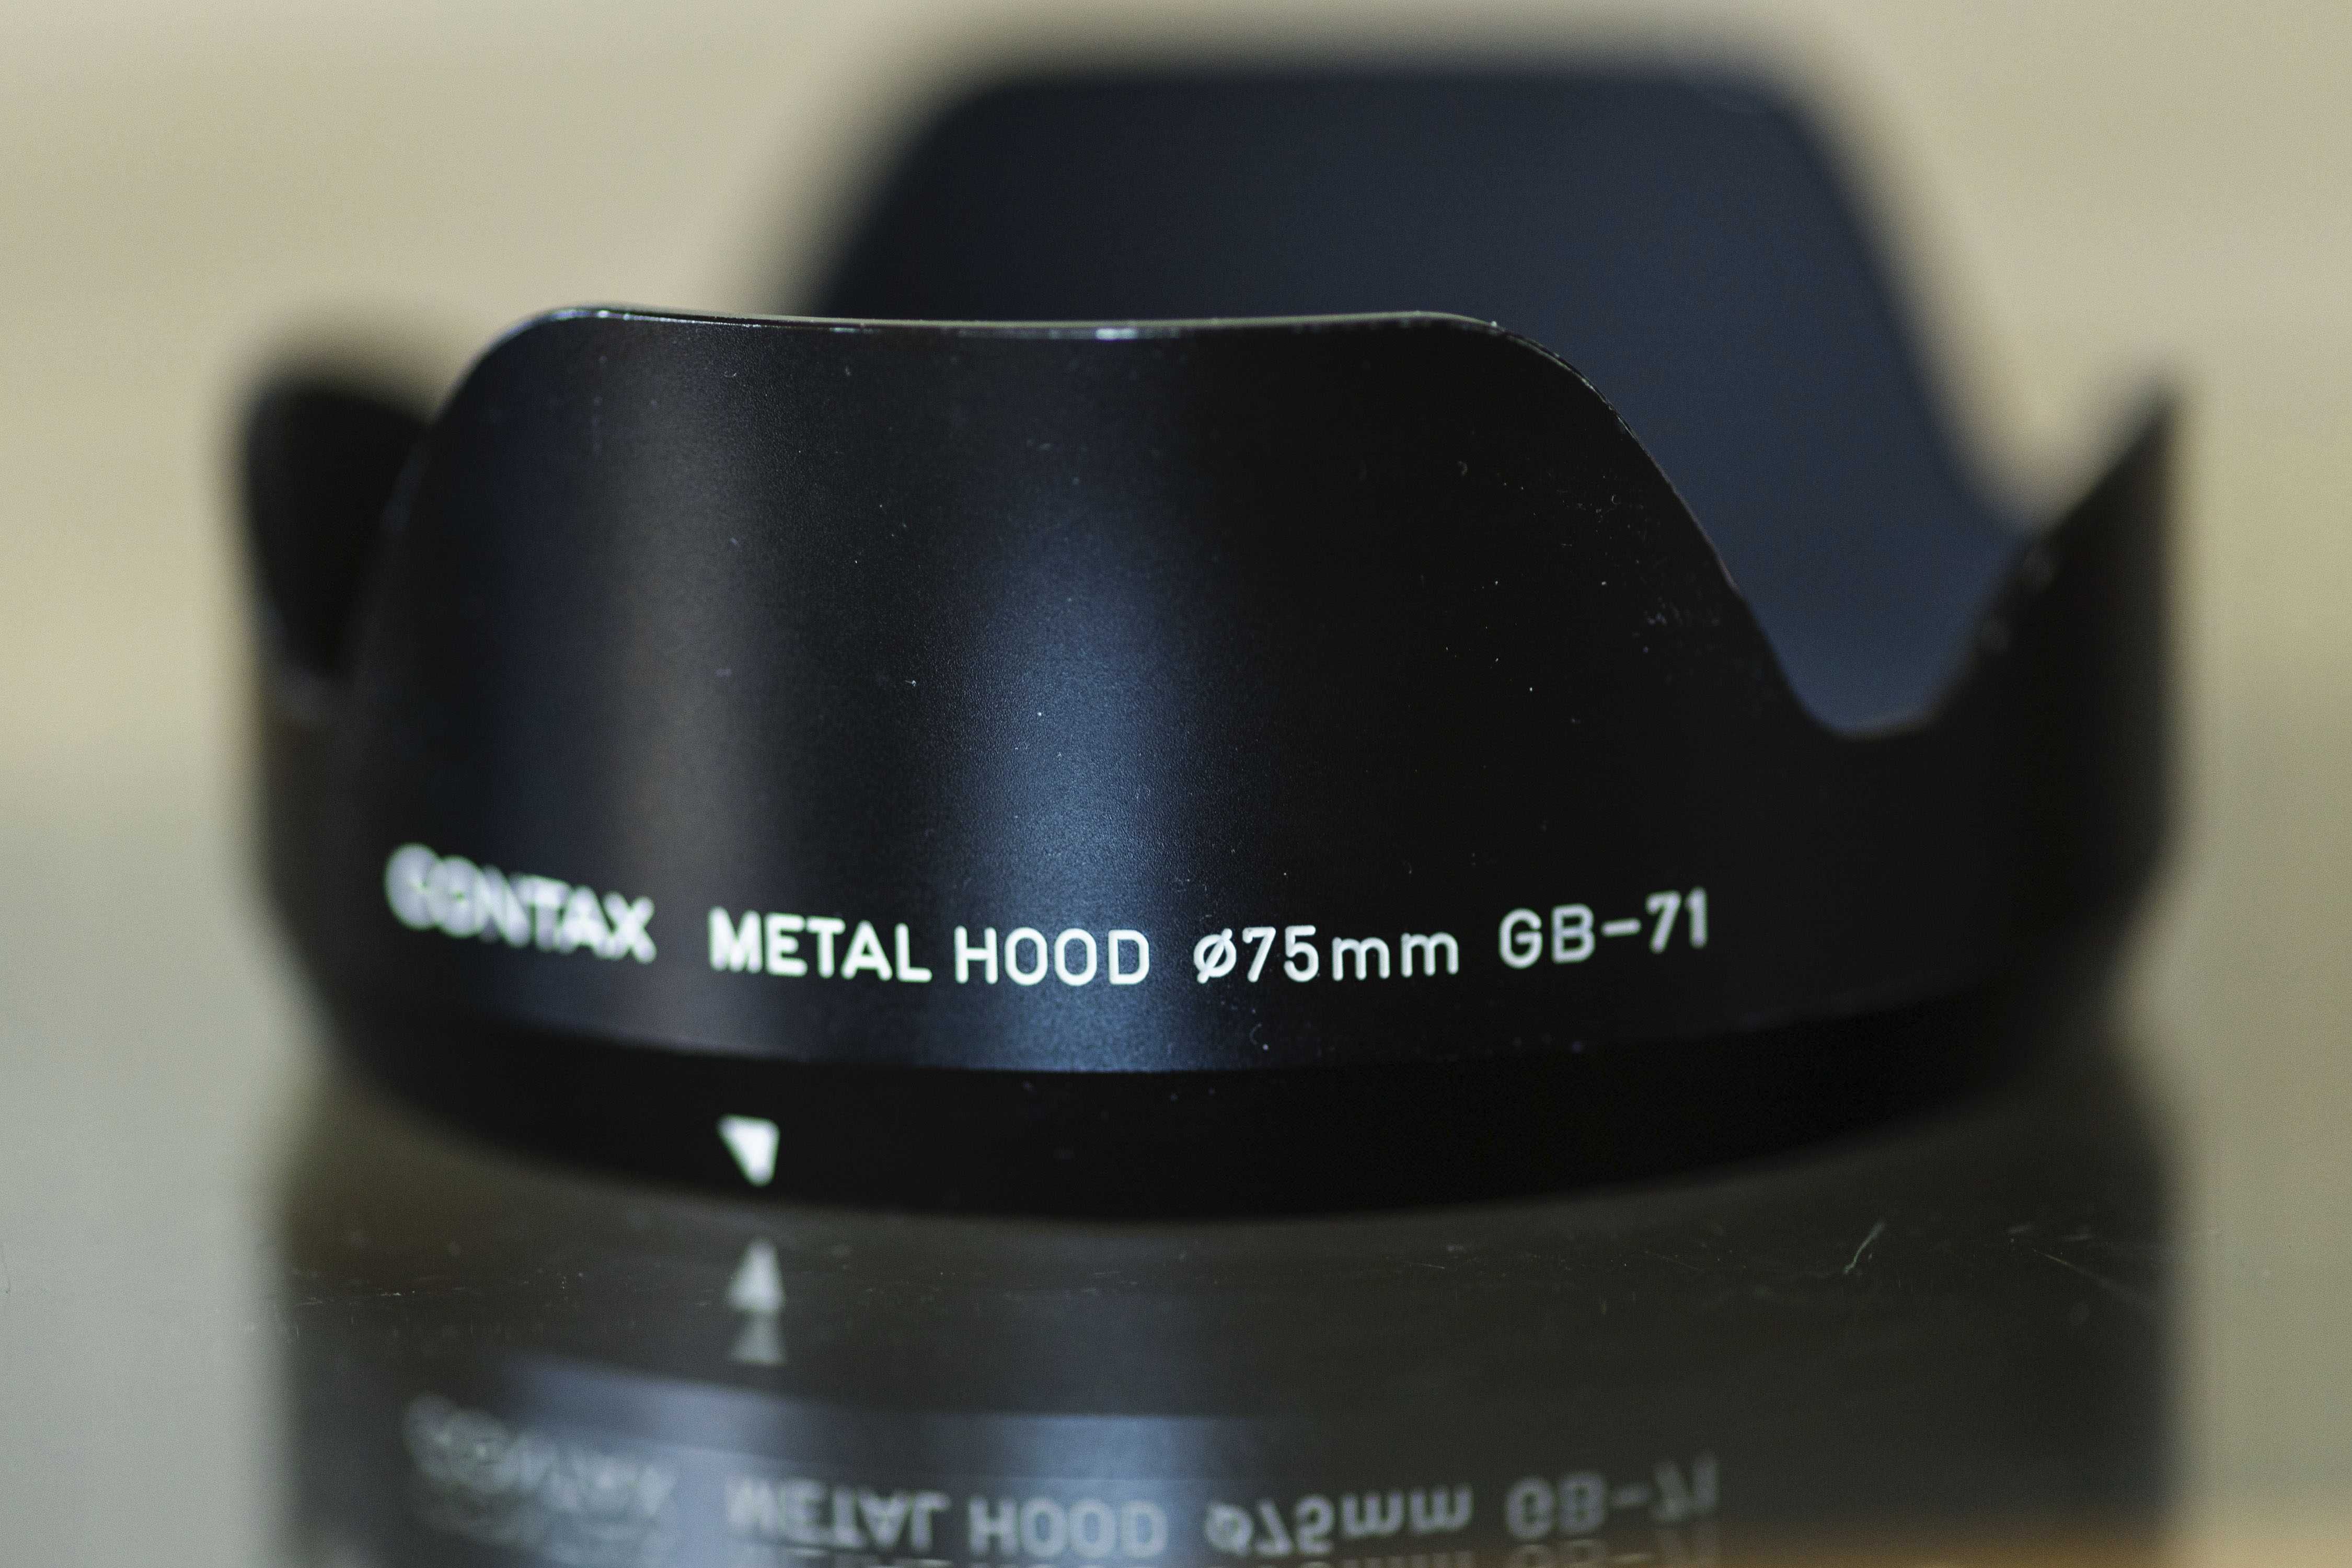 Contax 645 GB-71 osłona metalowa metal hood do obiektywu 45mm